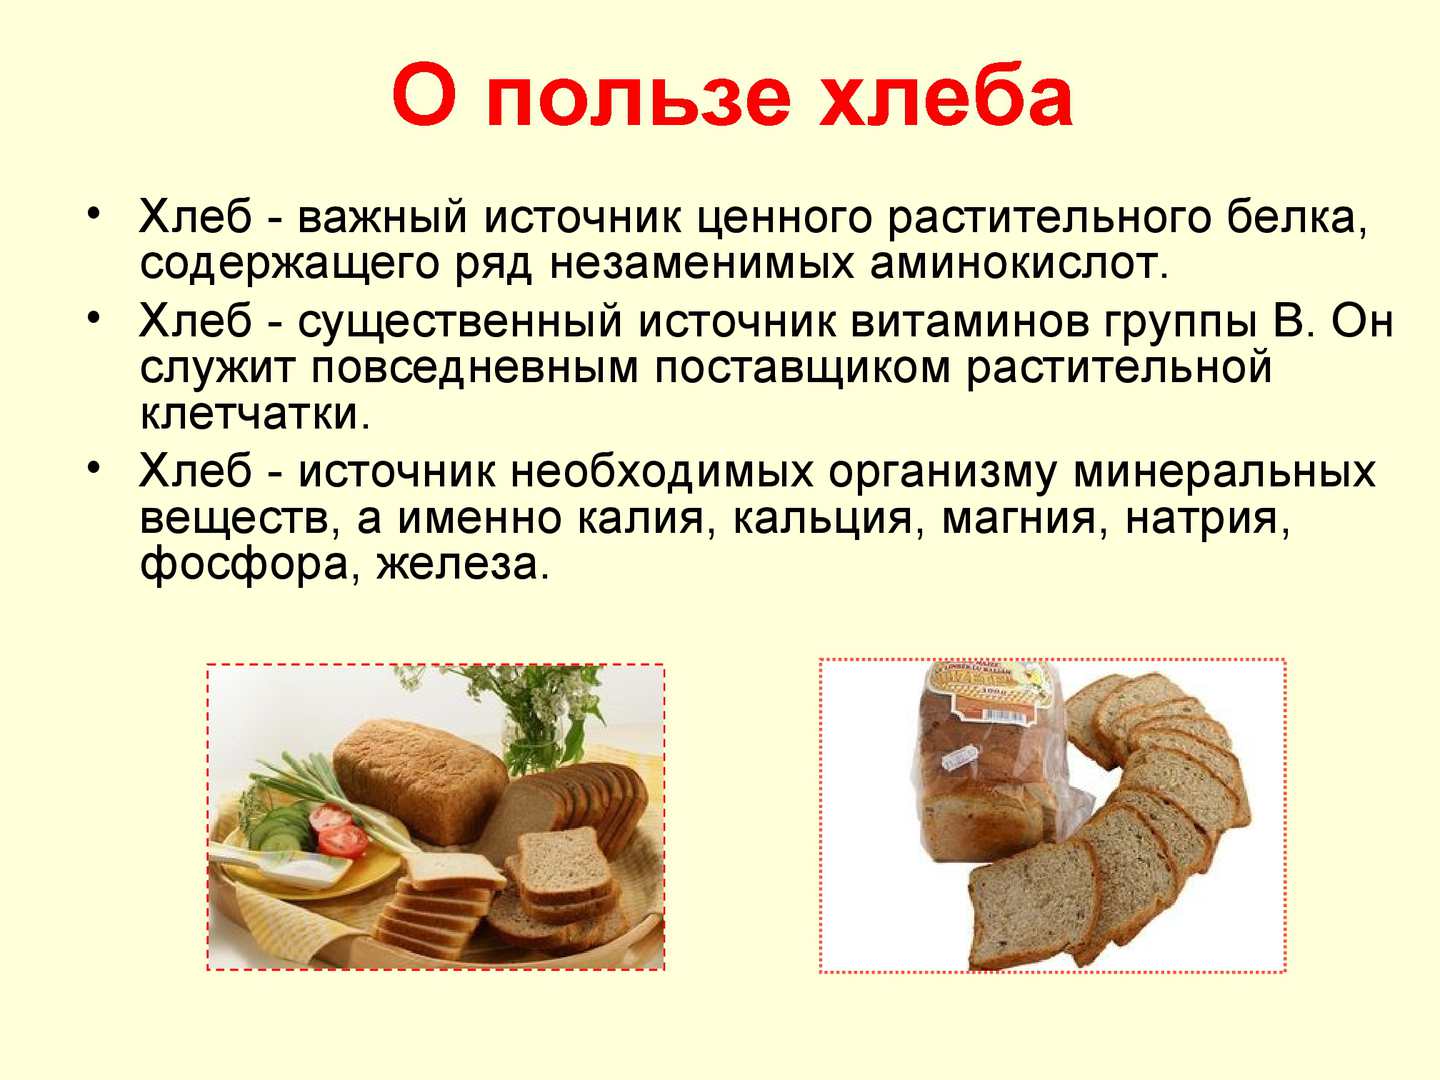 Какой хлеб самый полезный для здоровья человека - особенности и свойства